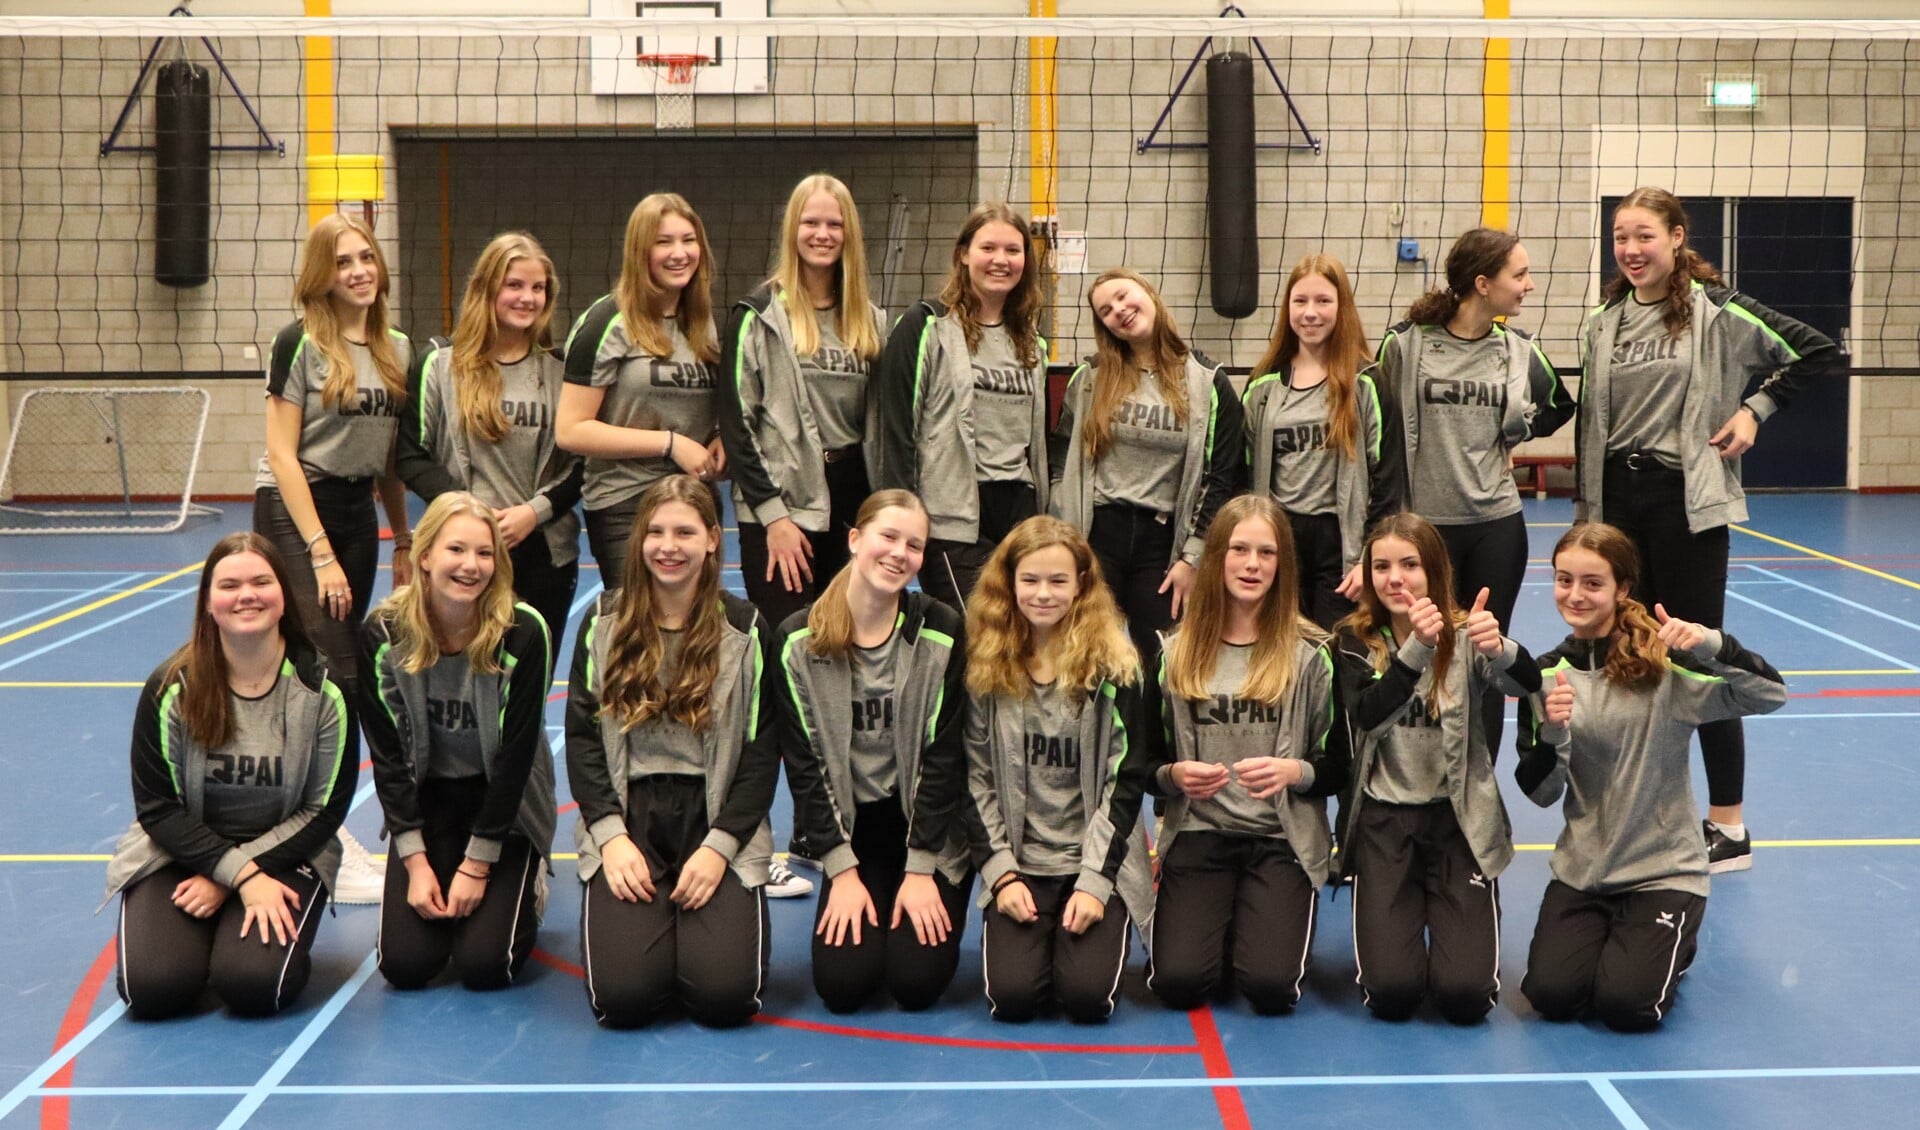 De Meisjes A en B van volleybalvereniging DKJO zijn kampioen.